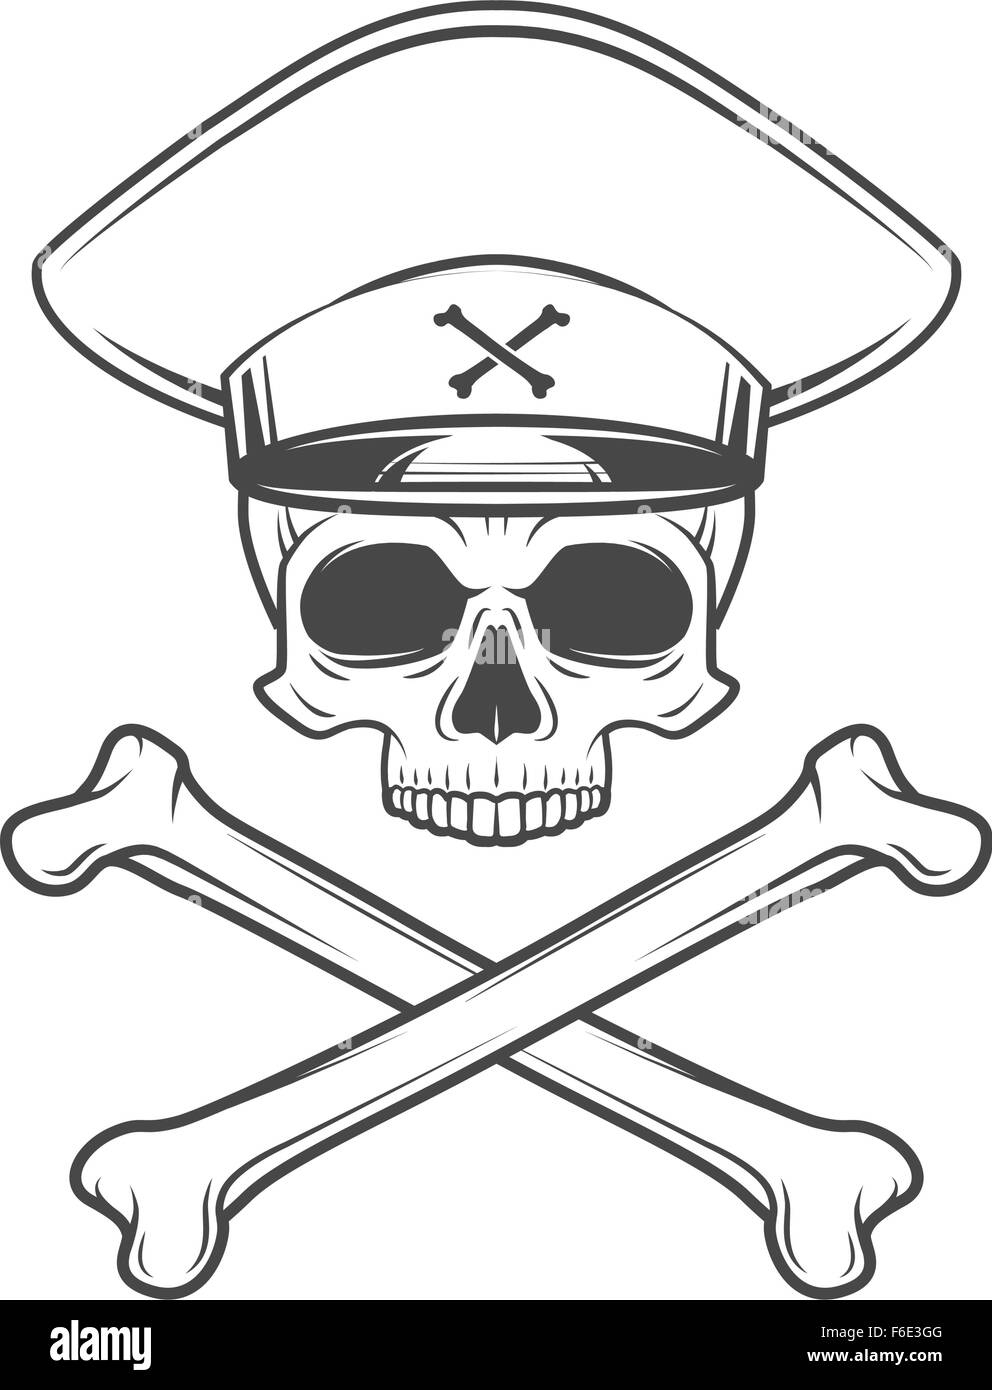 Schädel mit allgemeinen Hut und cross Bones. Logokonzept tot verrückten Tyrannen. Militärische T-shirt Vektorgrafik. Stock Vektor